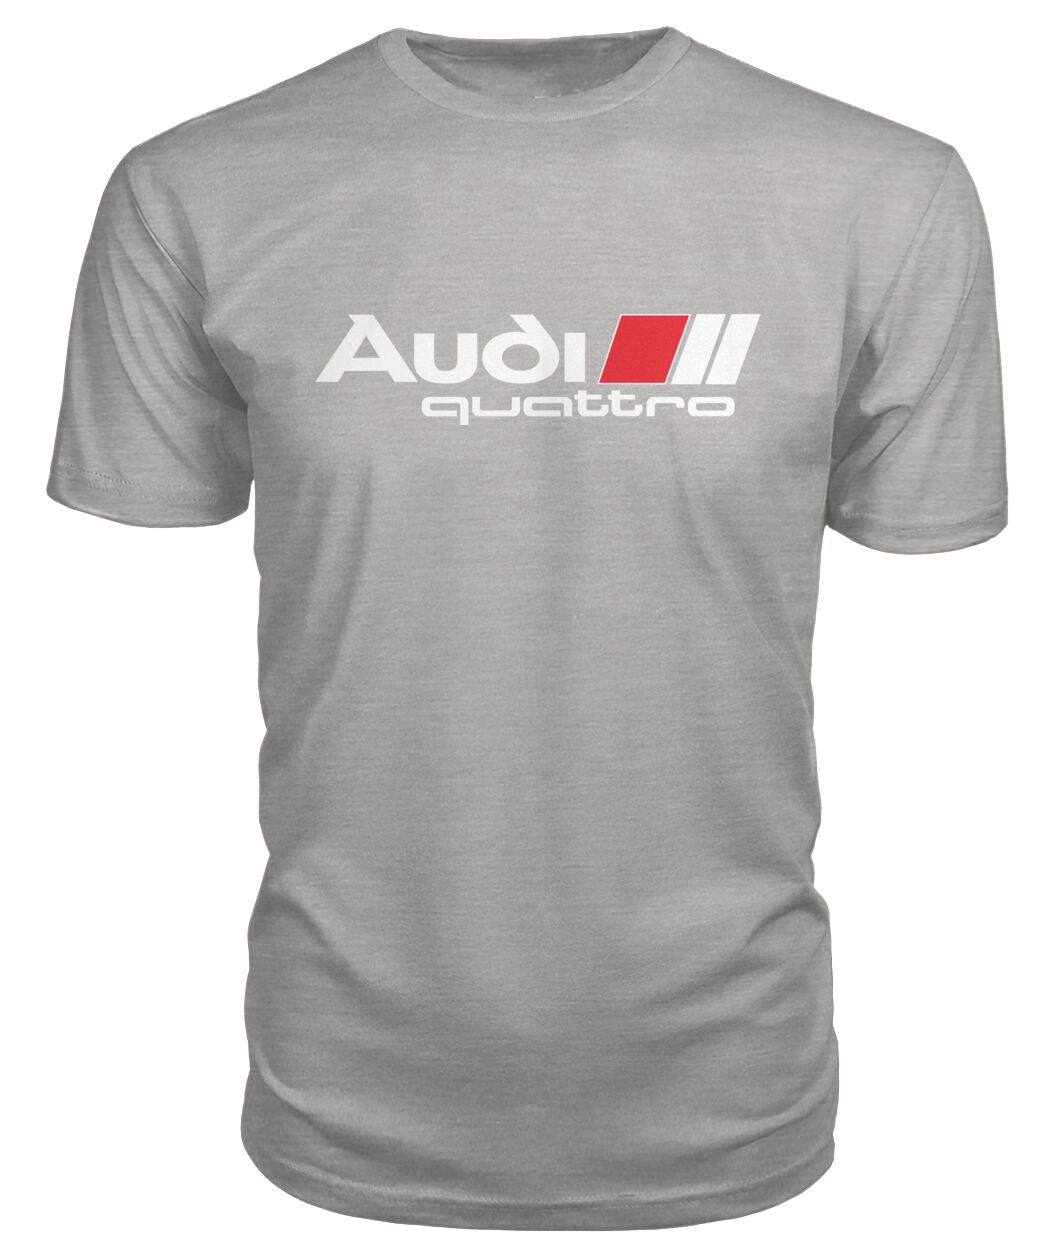 Audi Quattro (Stripes) T-Shirt